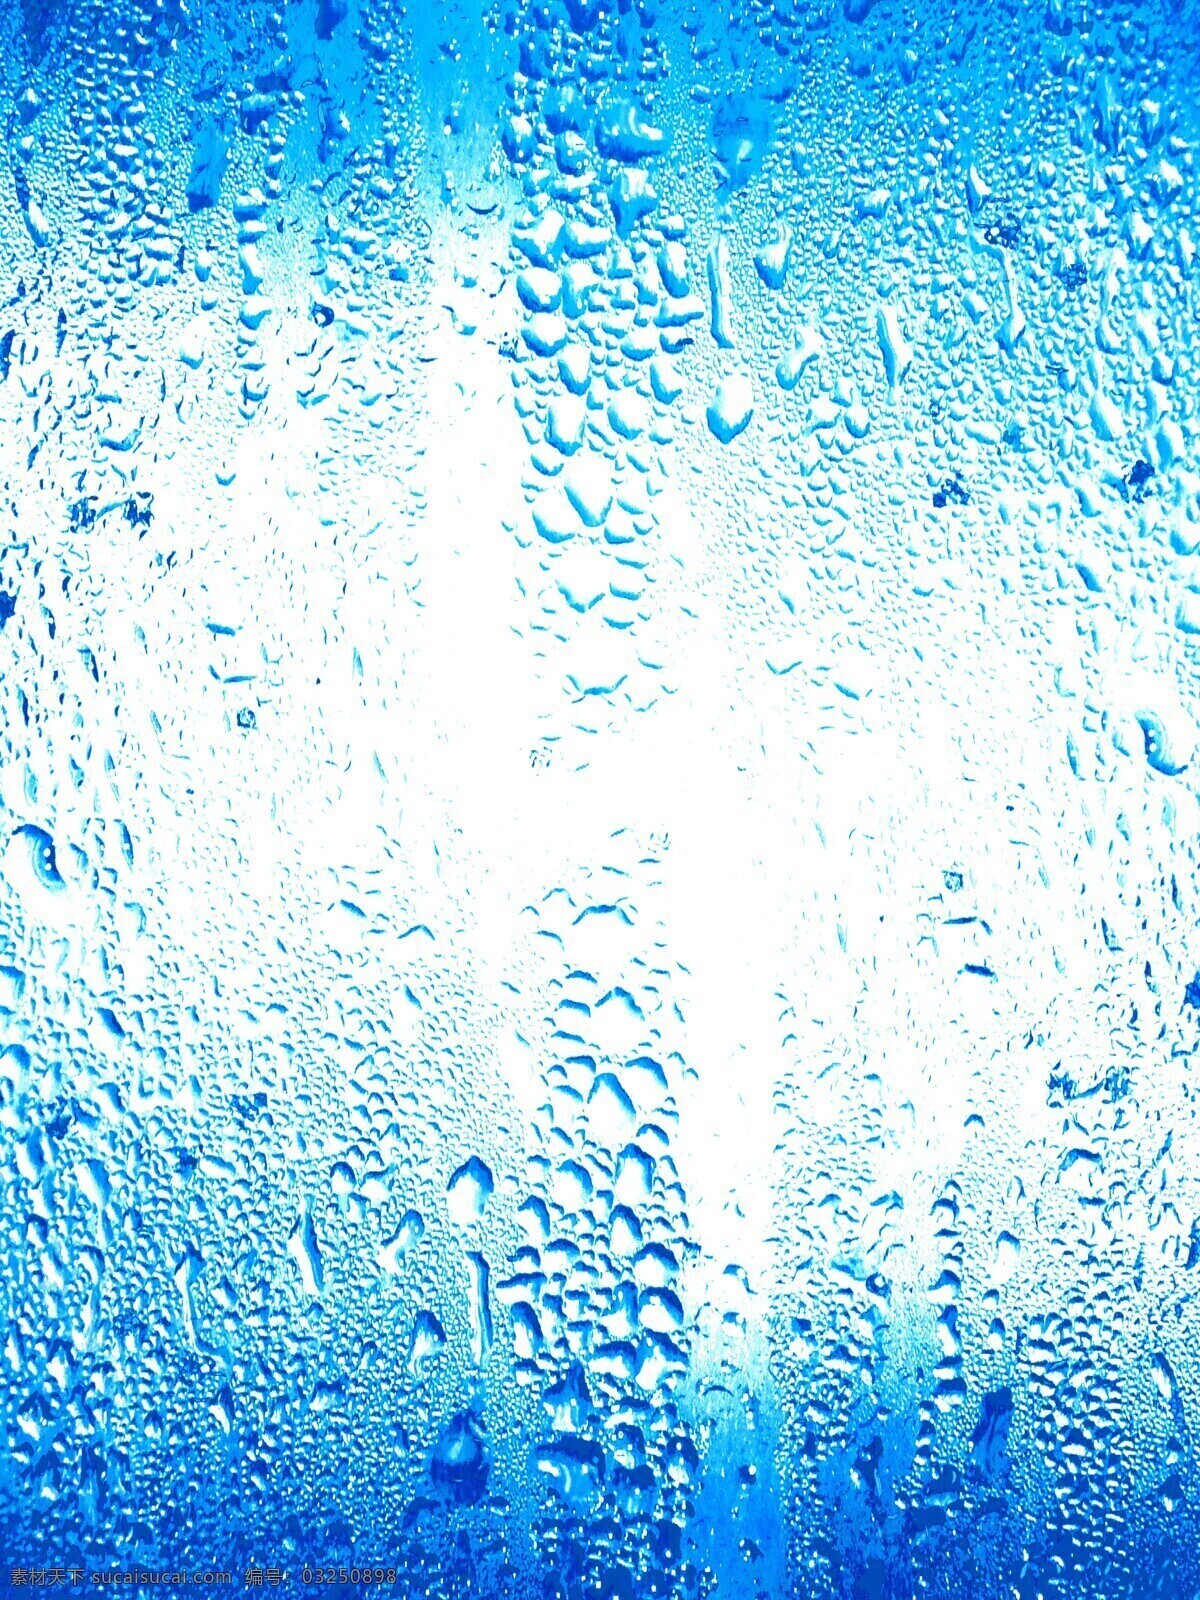 玻璃 上 水珠 水浪 水 水纹 水波 水花 水背景 水主题 水元素 冰水烈火 玻璃上的水珠 水图片 生活百科